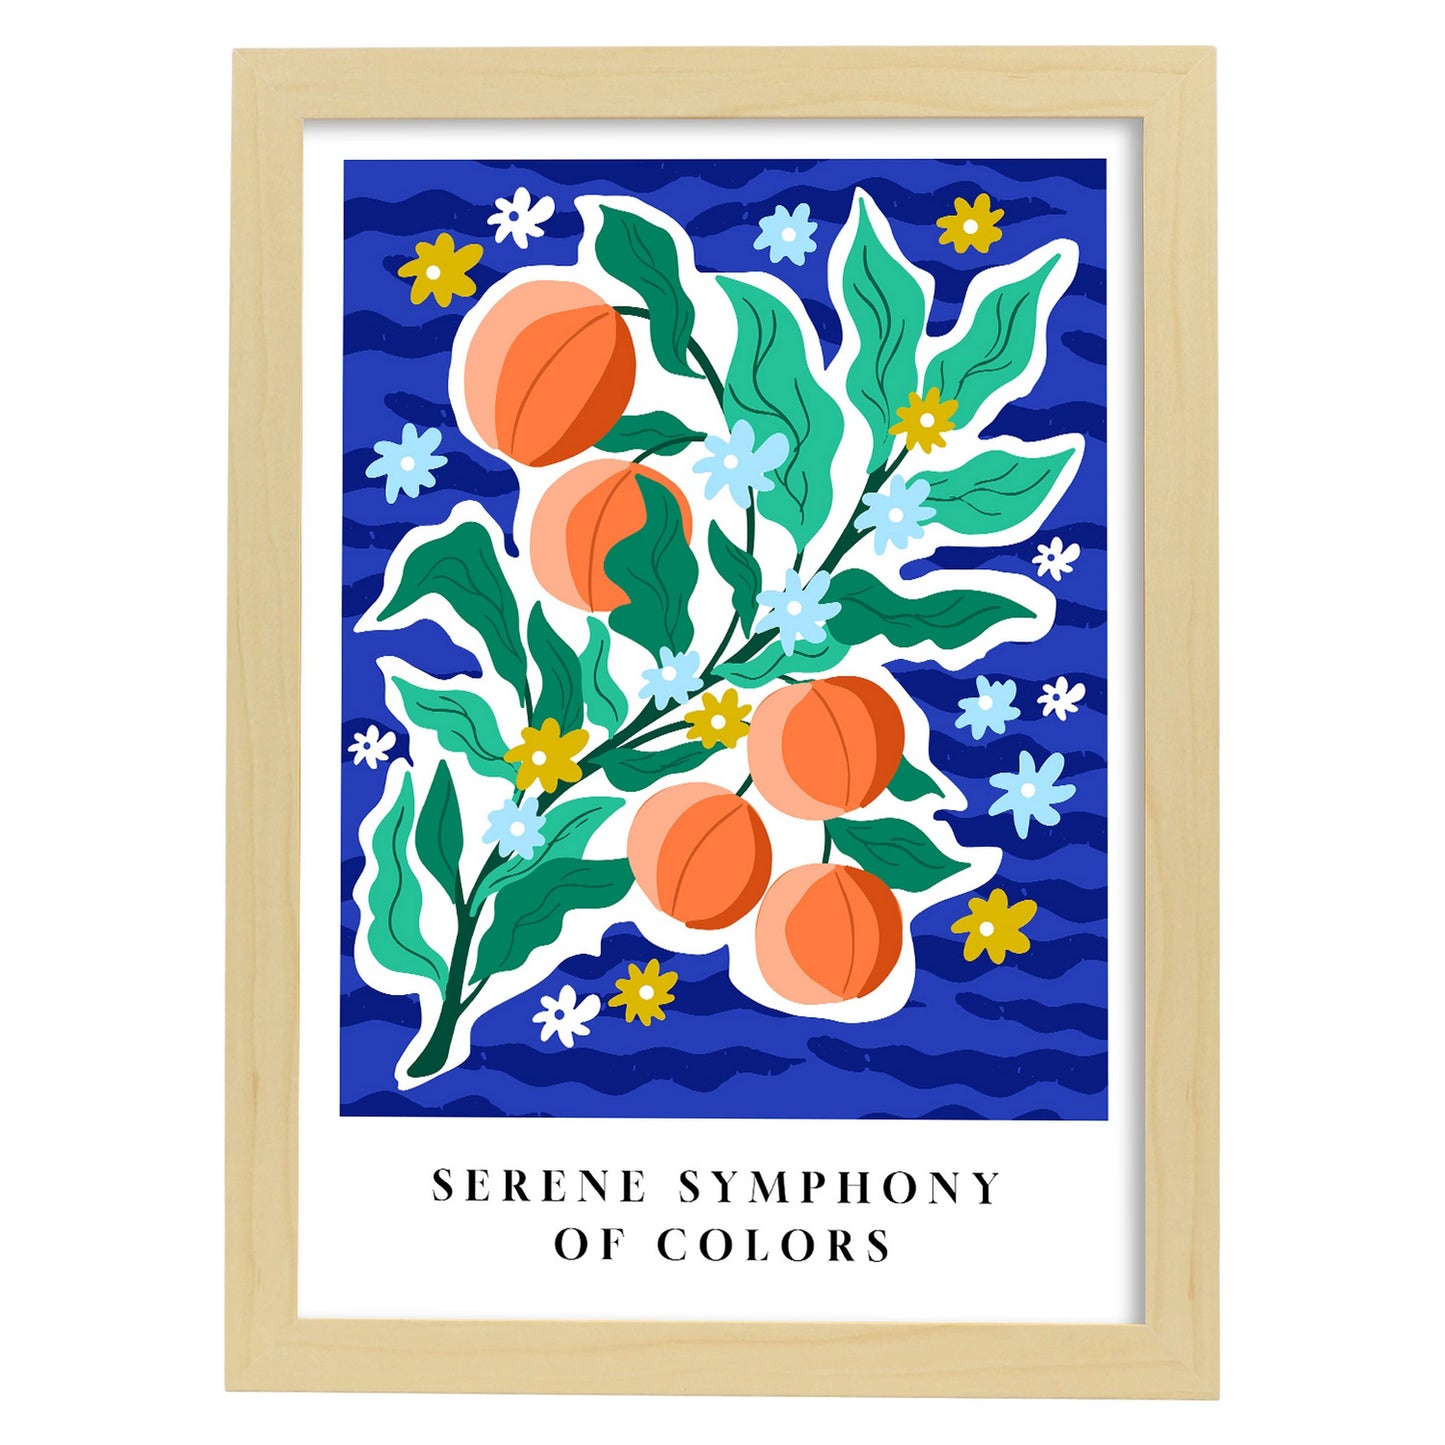 Lámina estética de Sinfonía Serena de Colores